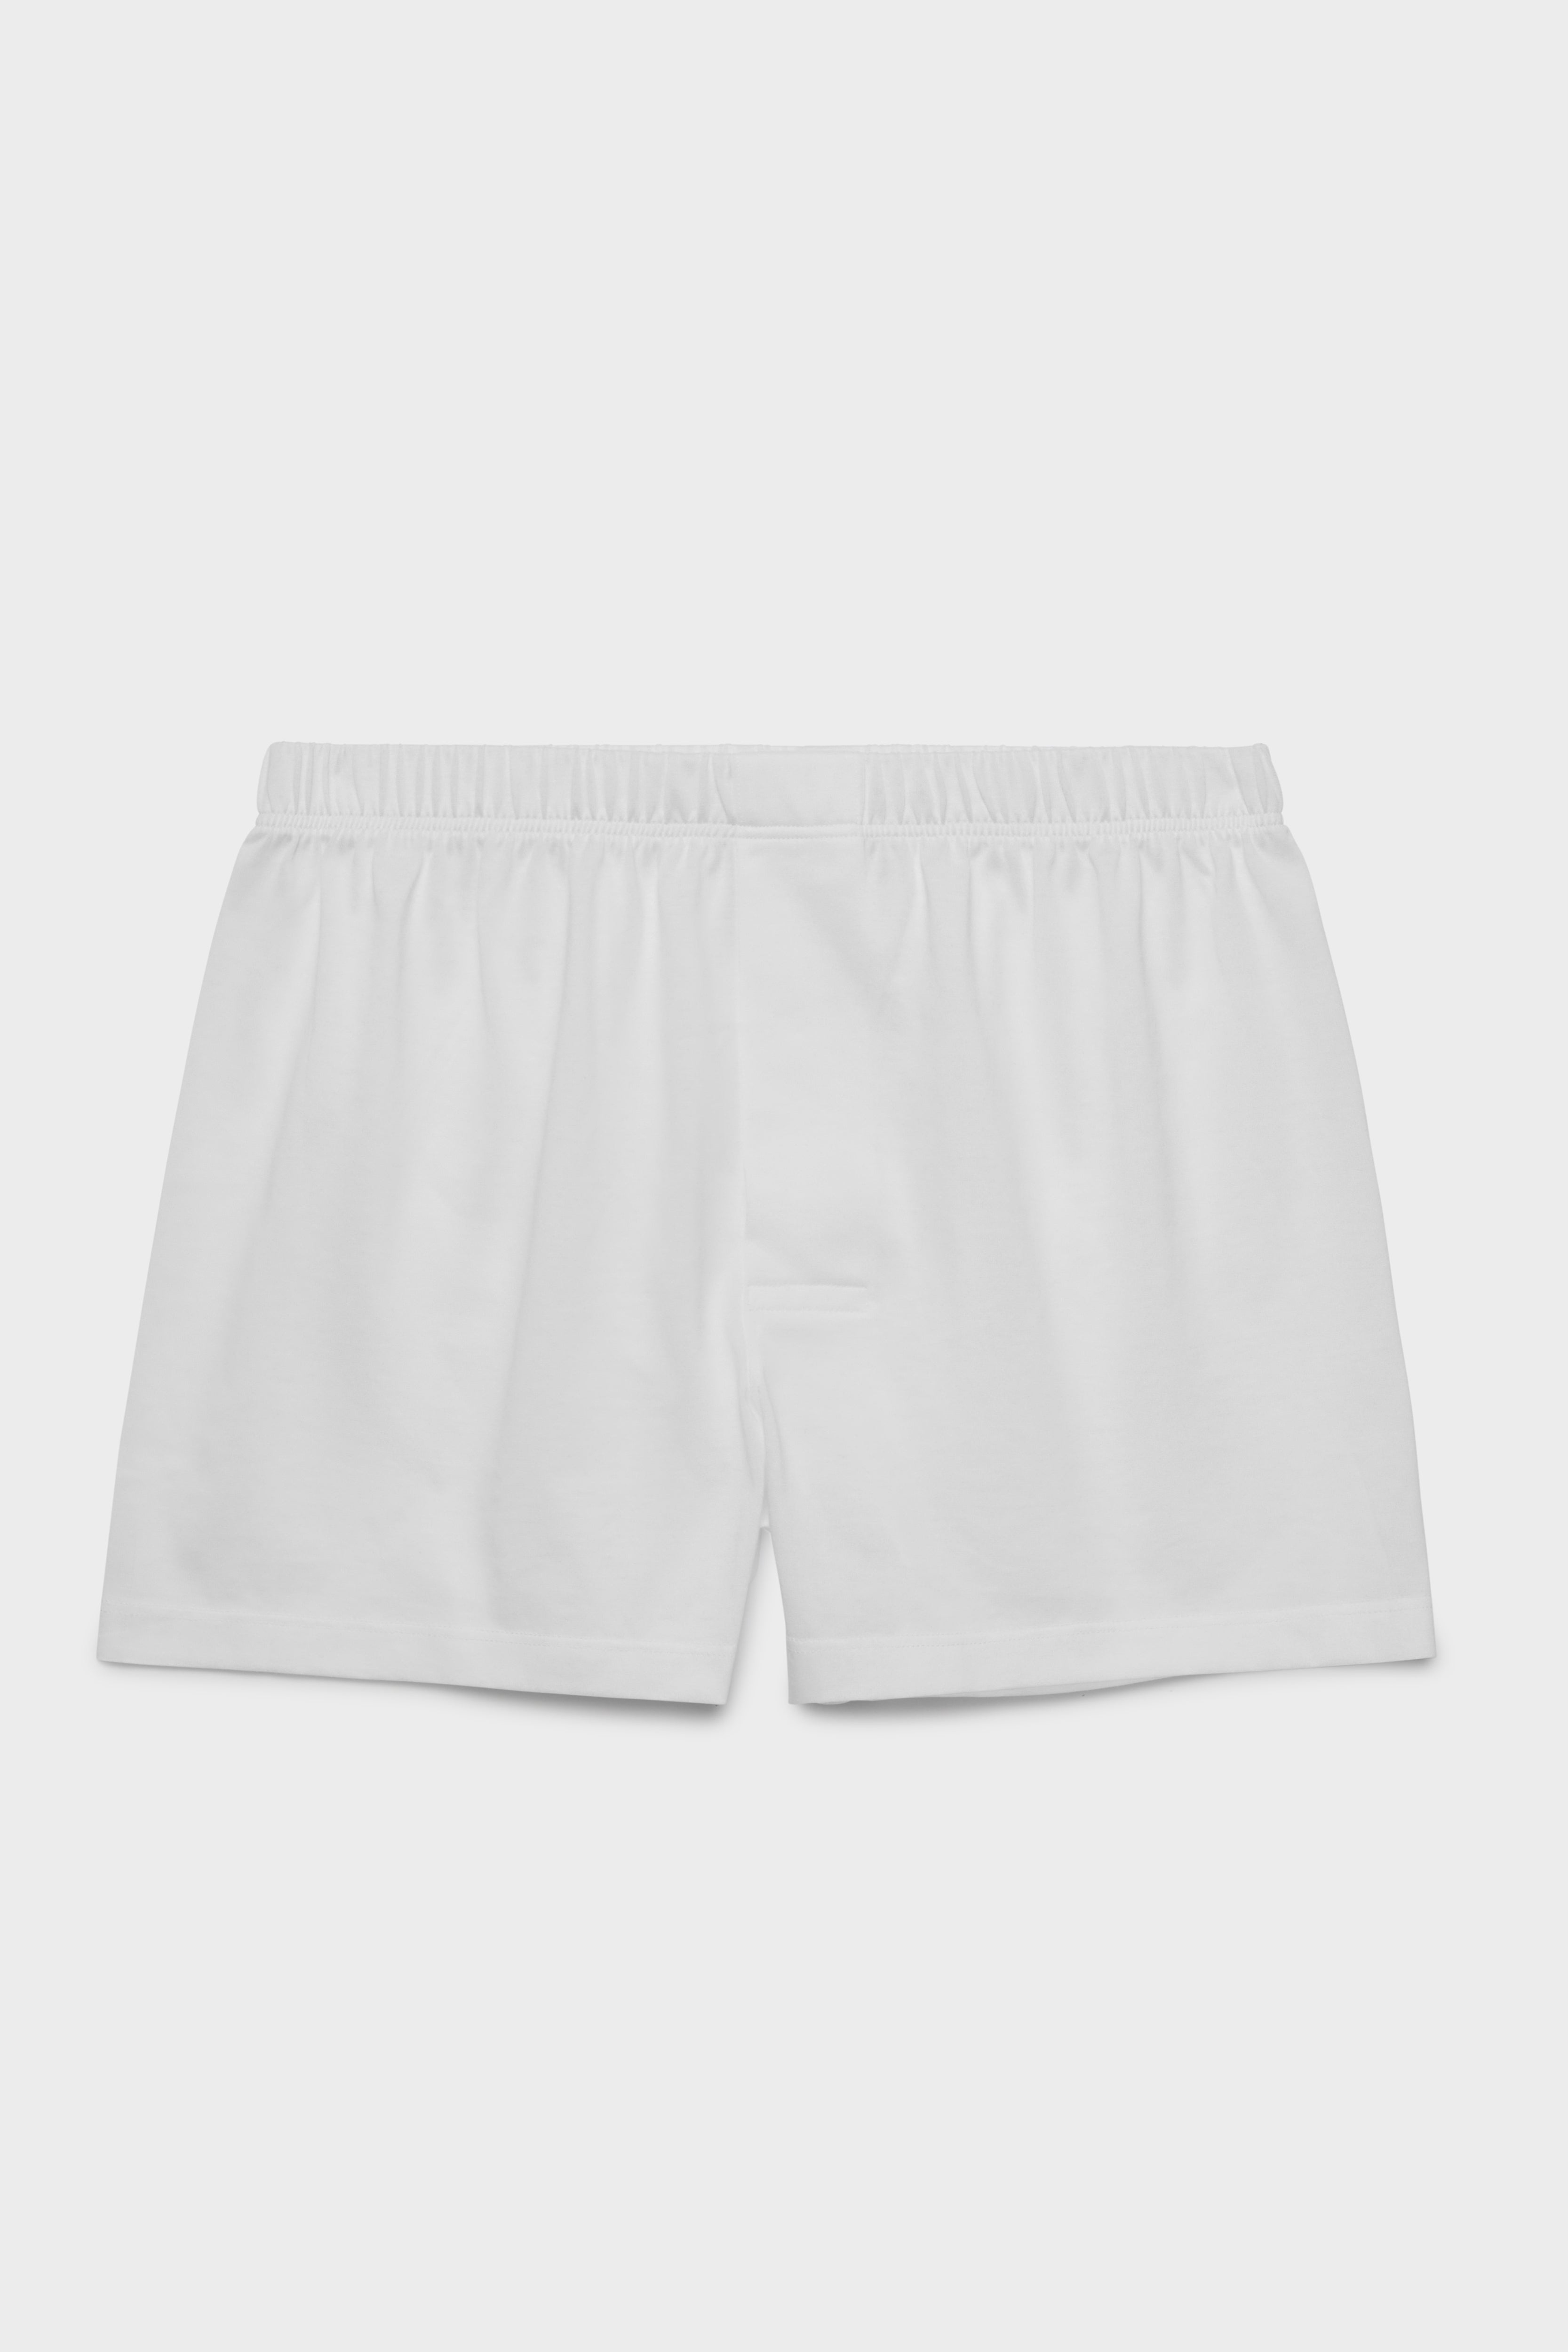 BRESCIANI -men's underwear. Classic Boxers. Cotton. White – Bresciani Shop